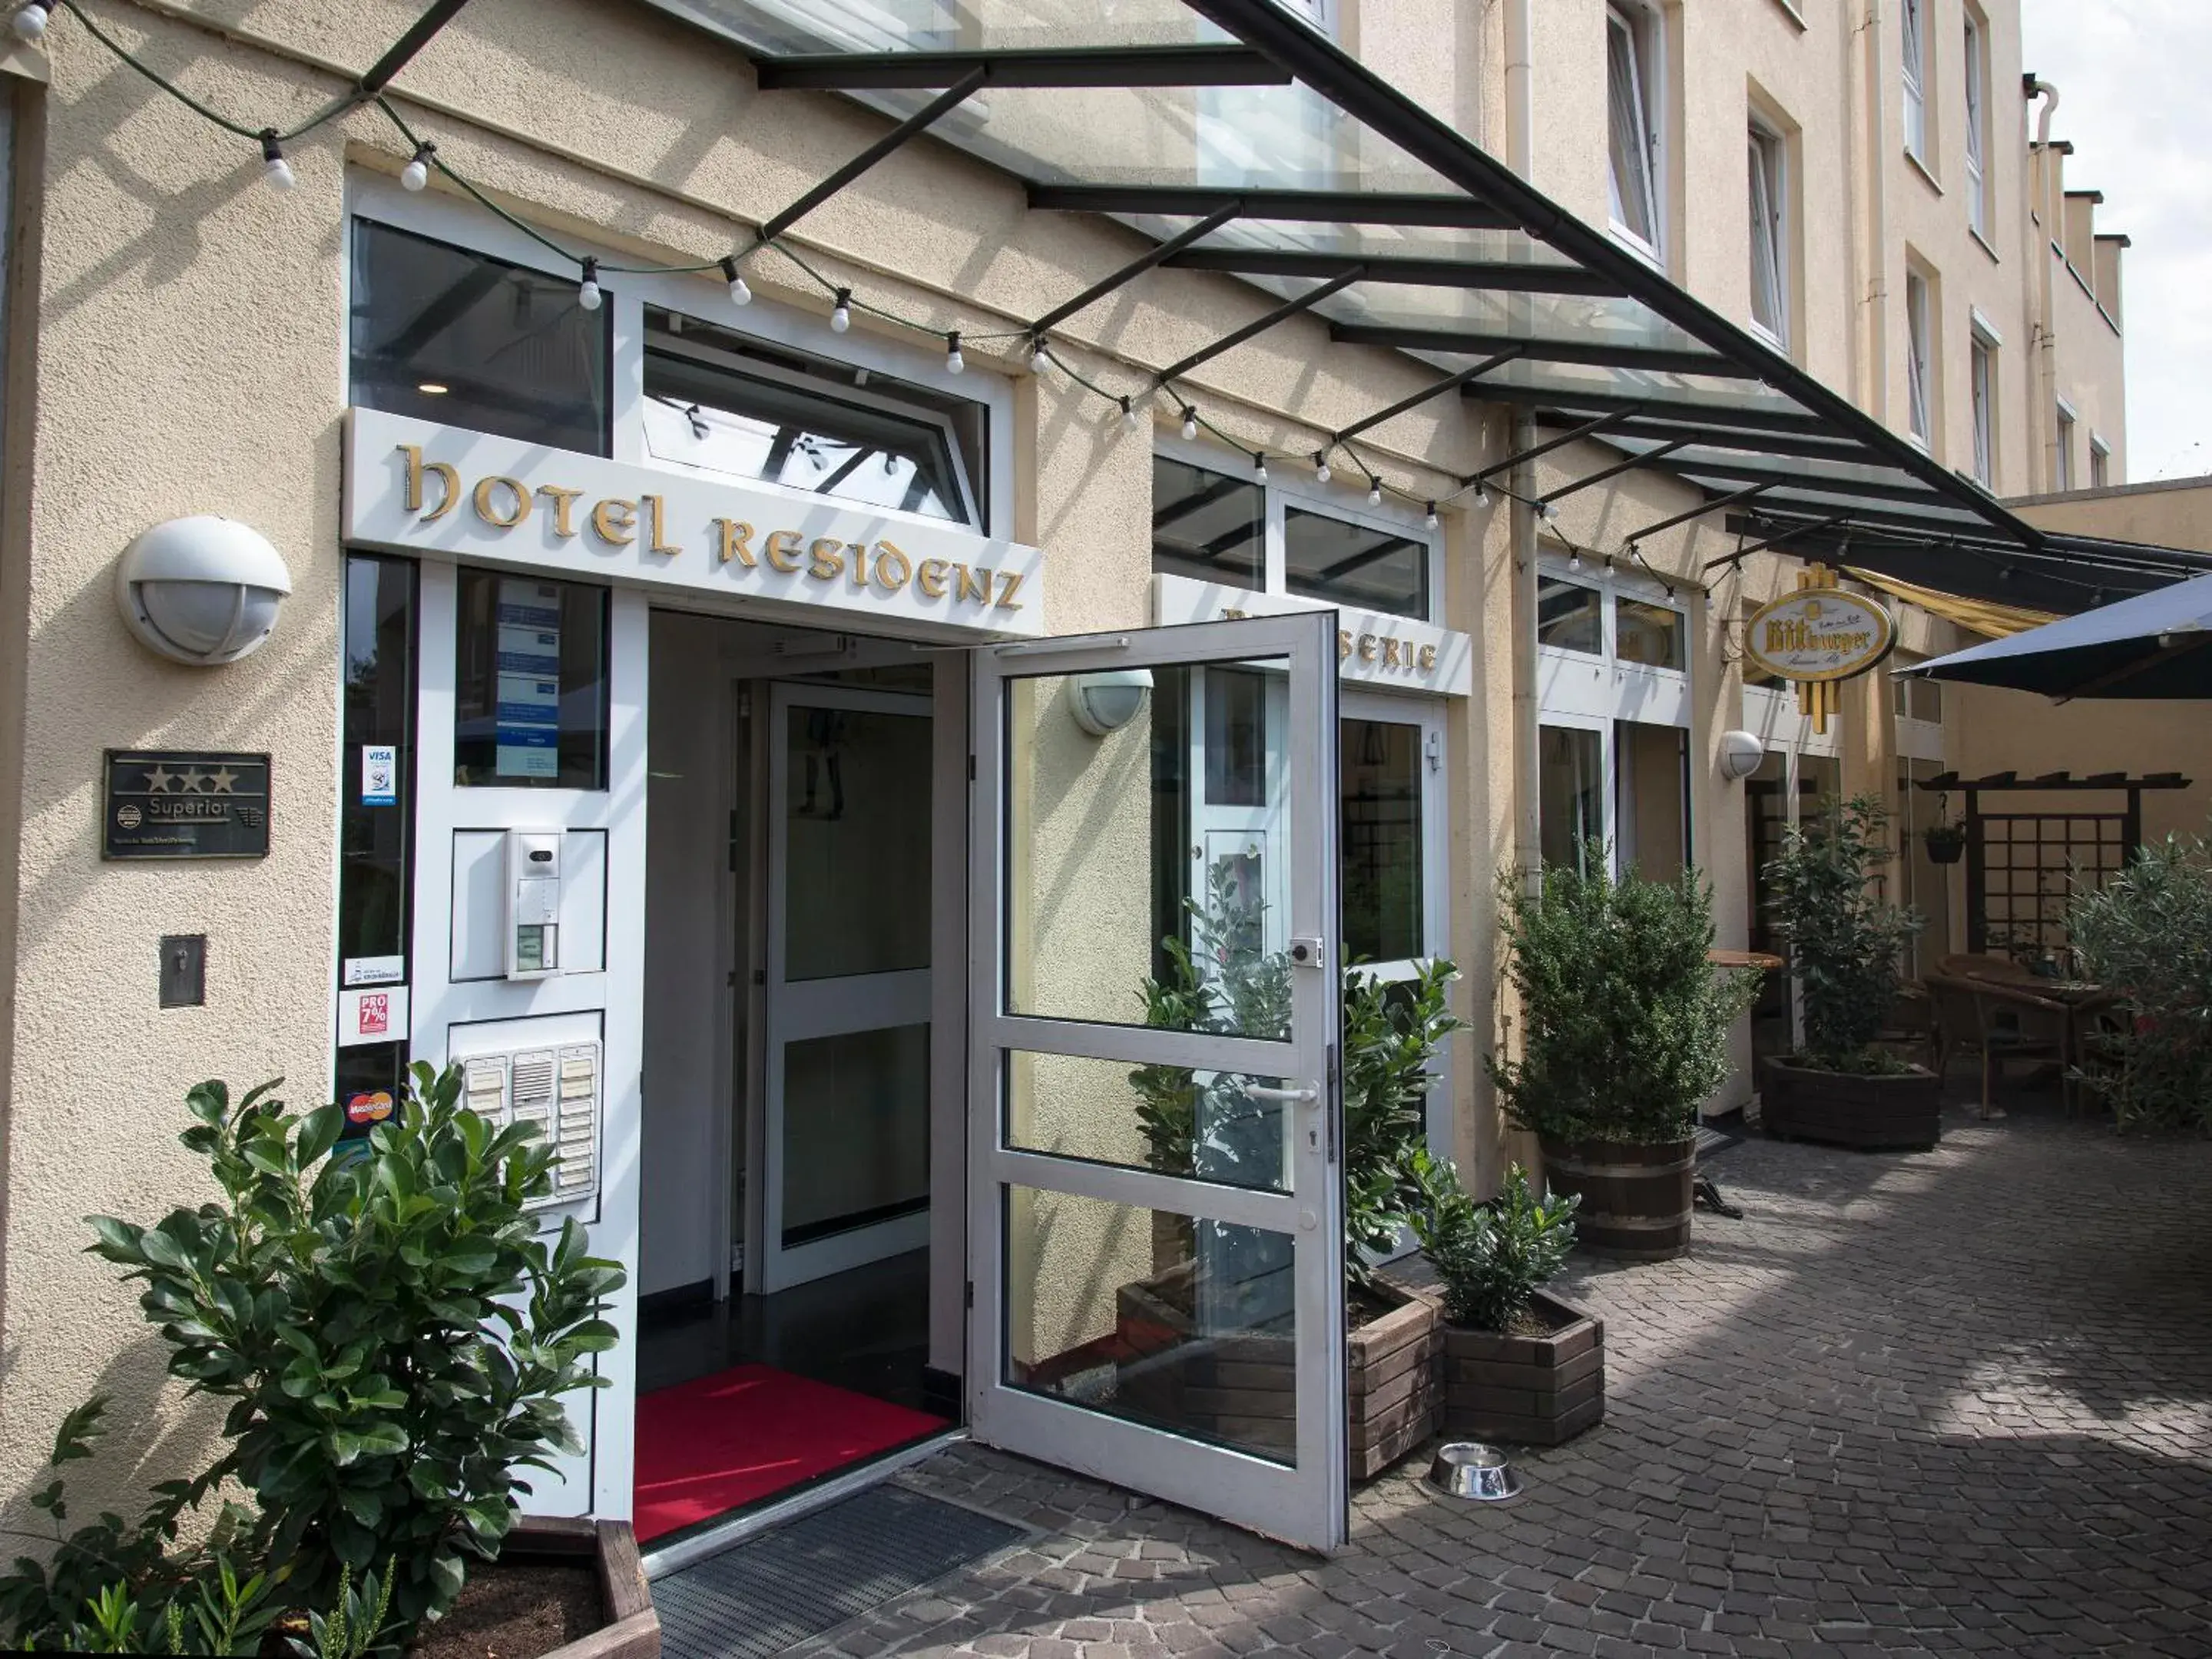 Facade/entrance in Posthaus Hotel Residenz